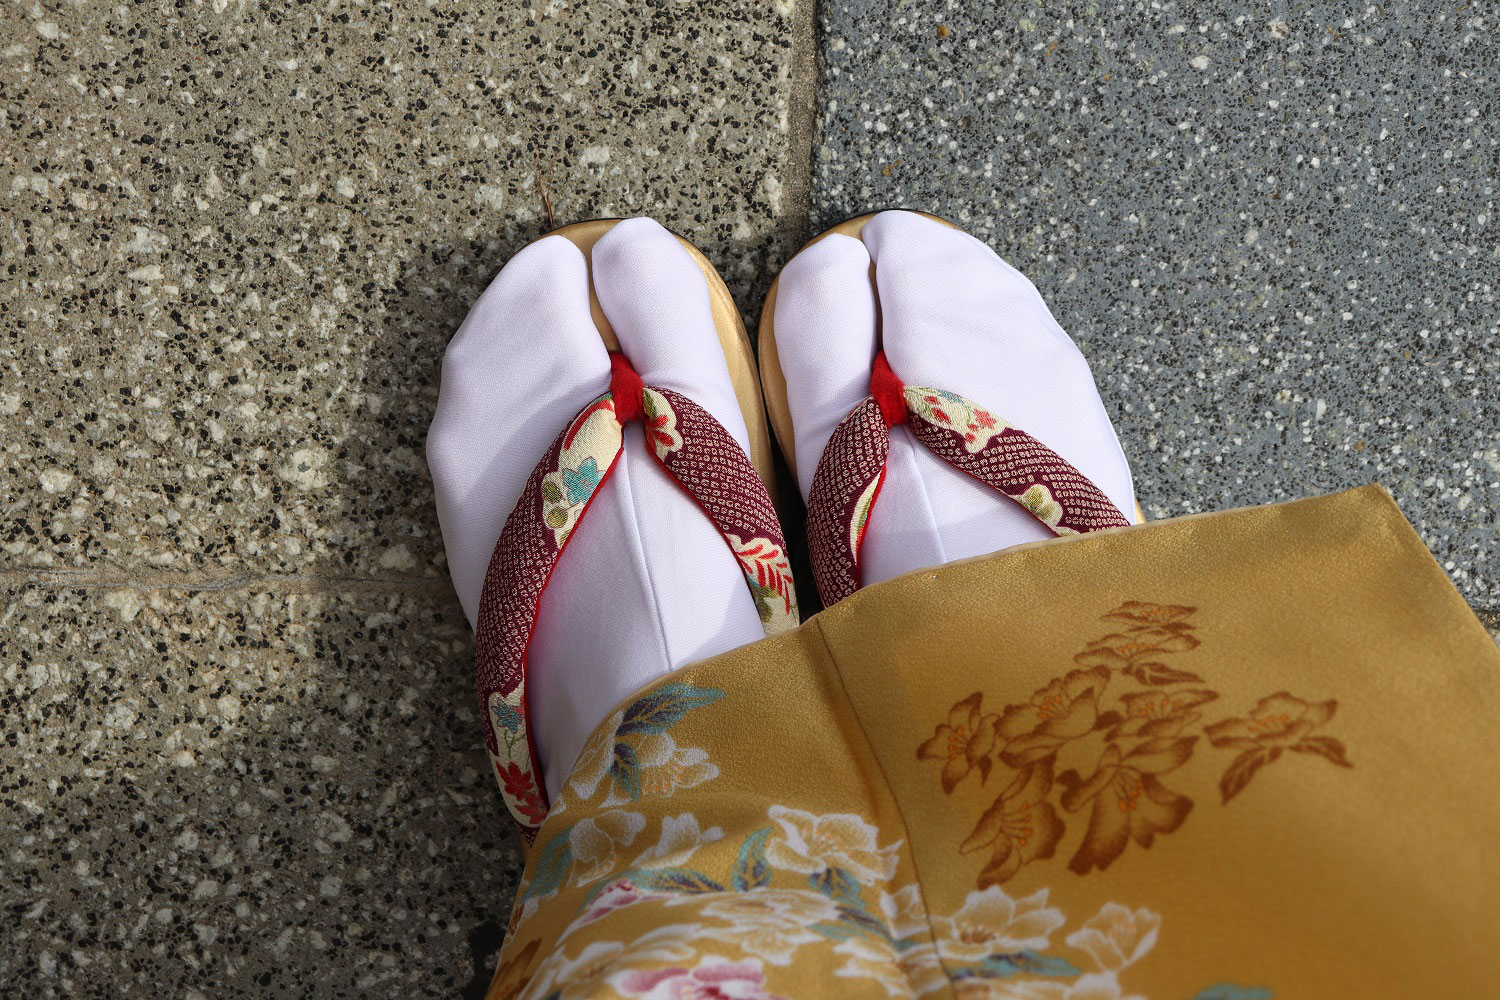 Kimono by Yumeyakata